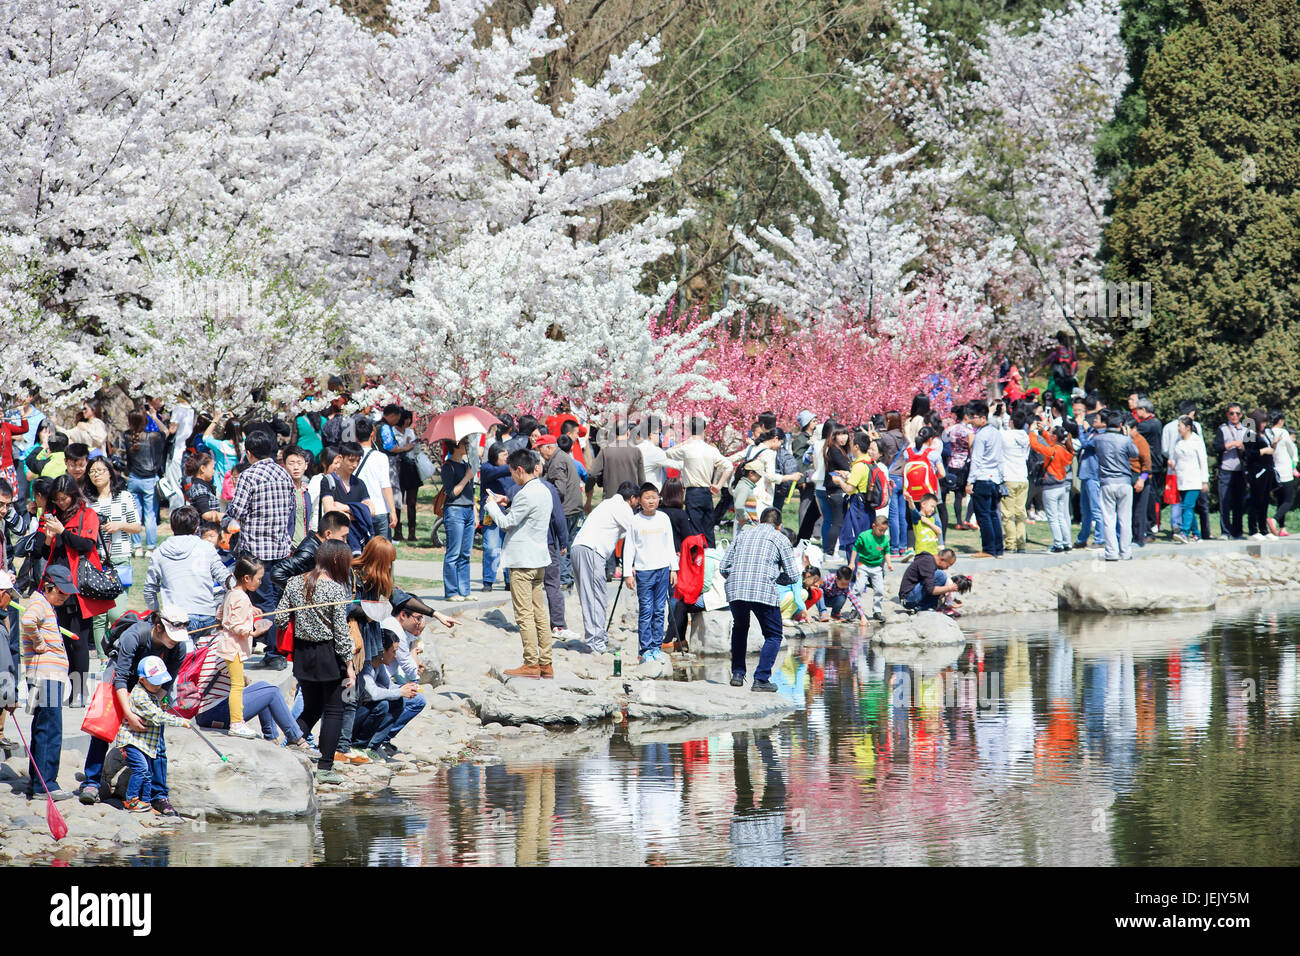 PECHINO-30 MARZO 2014. I visitatori possono godersi il festival della fioritura degli alberi di ciliegio del Parco Yuyuantan. Attrae il turismo nazionale e internazionale. Foto Stock